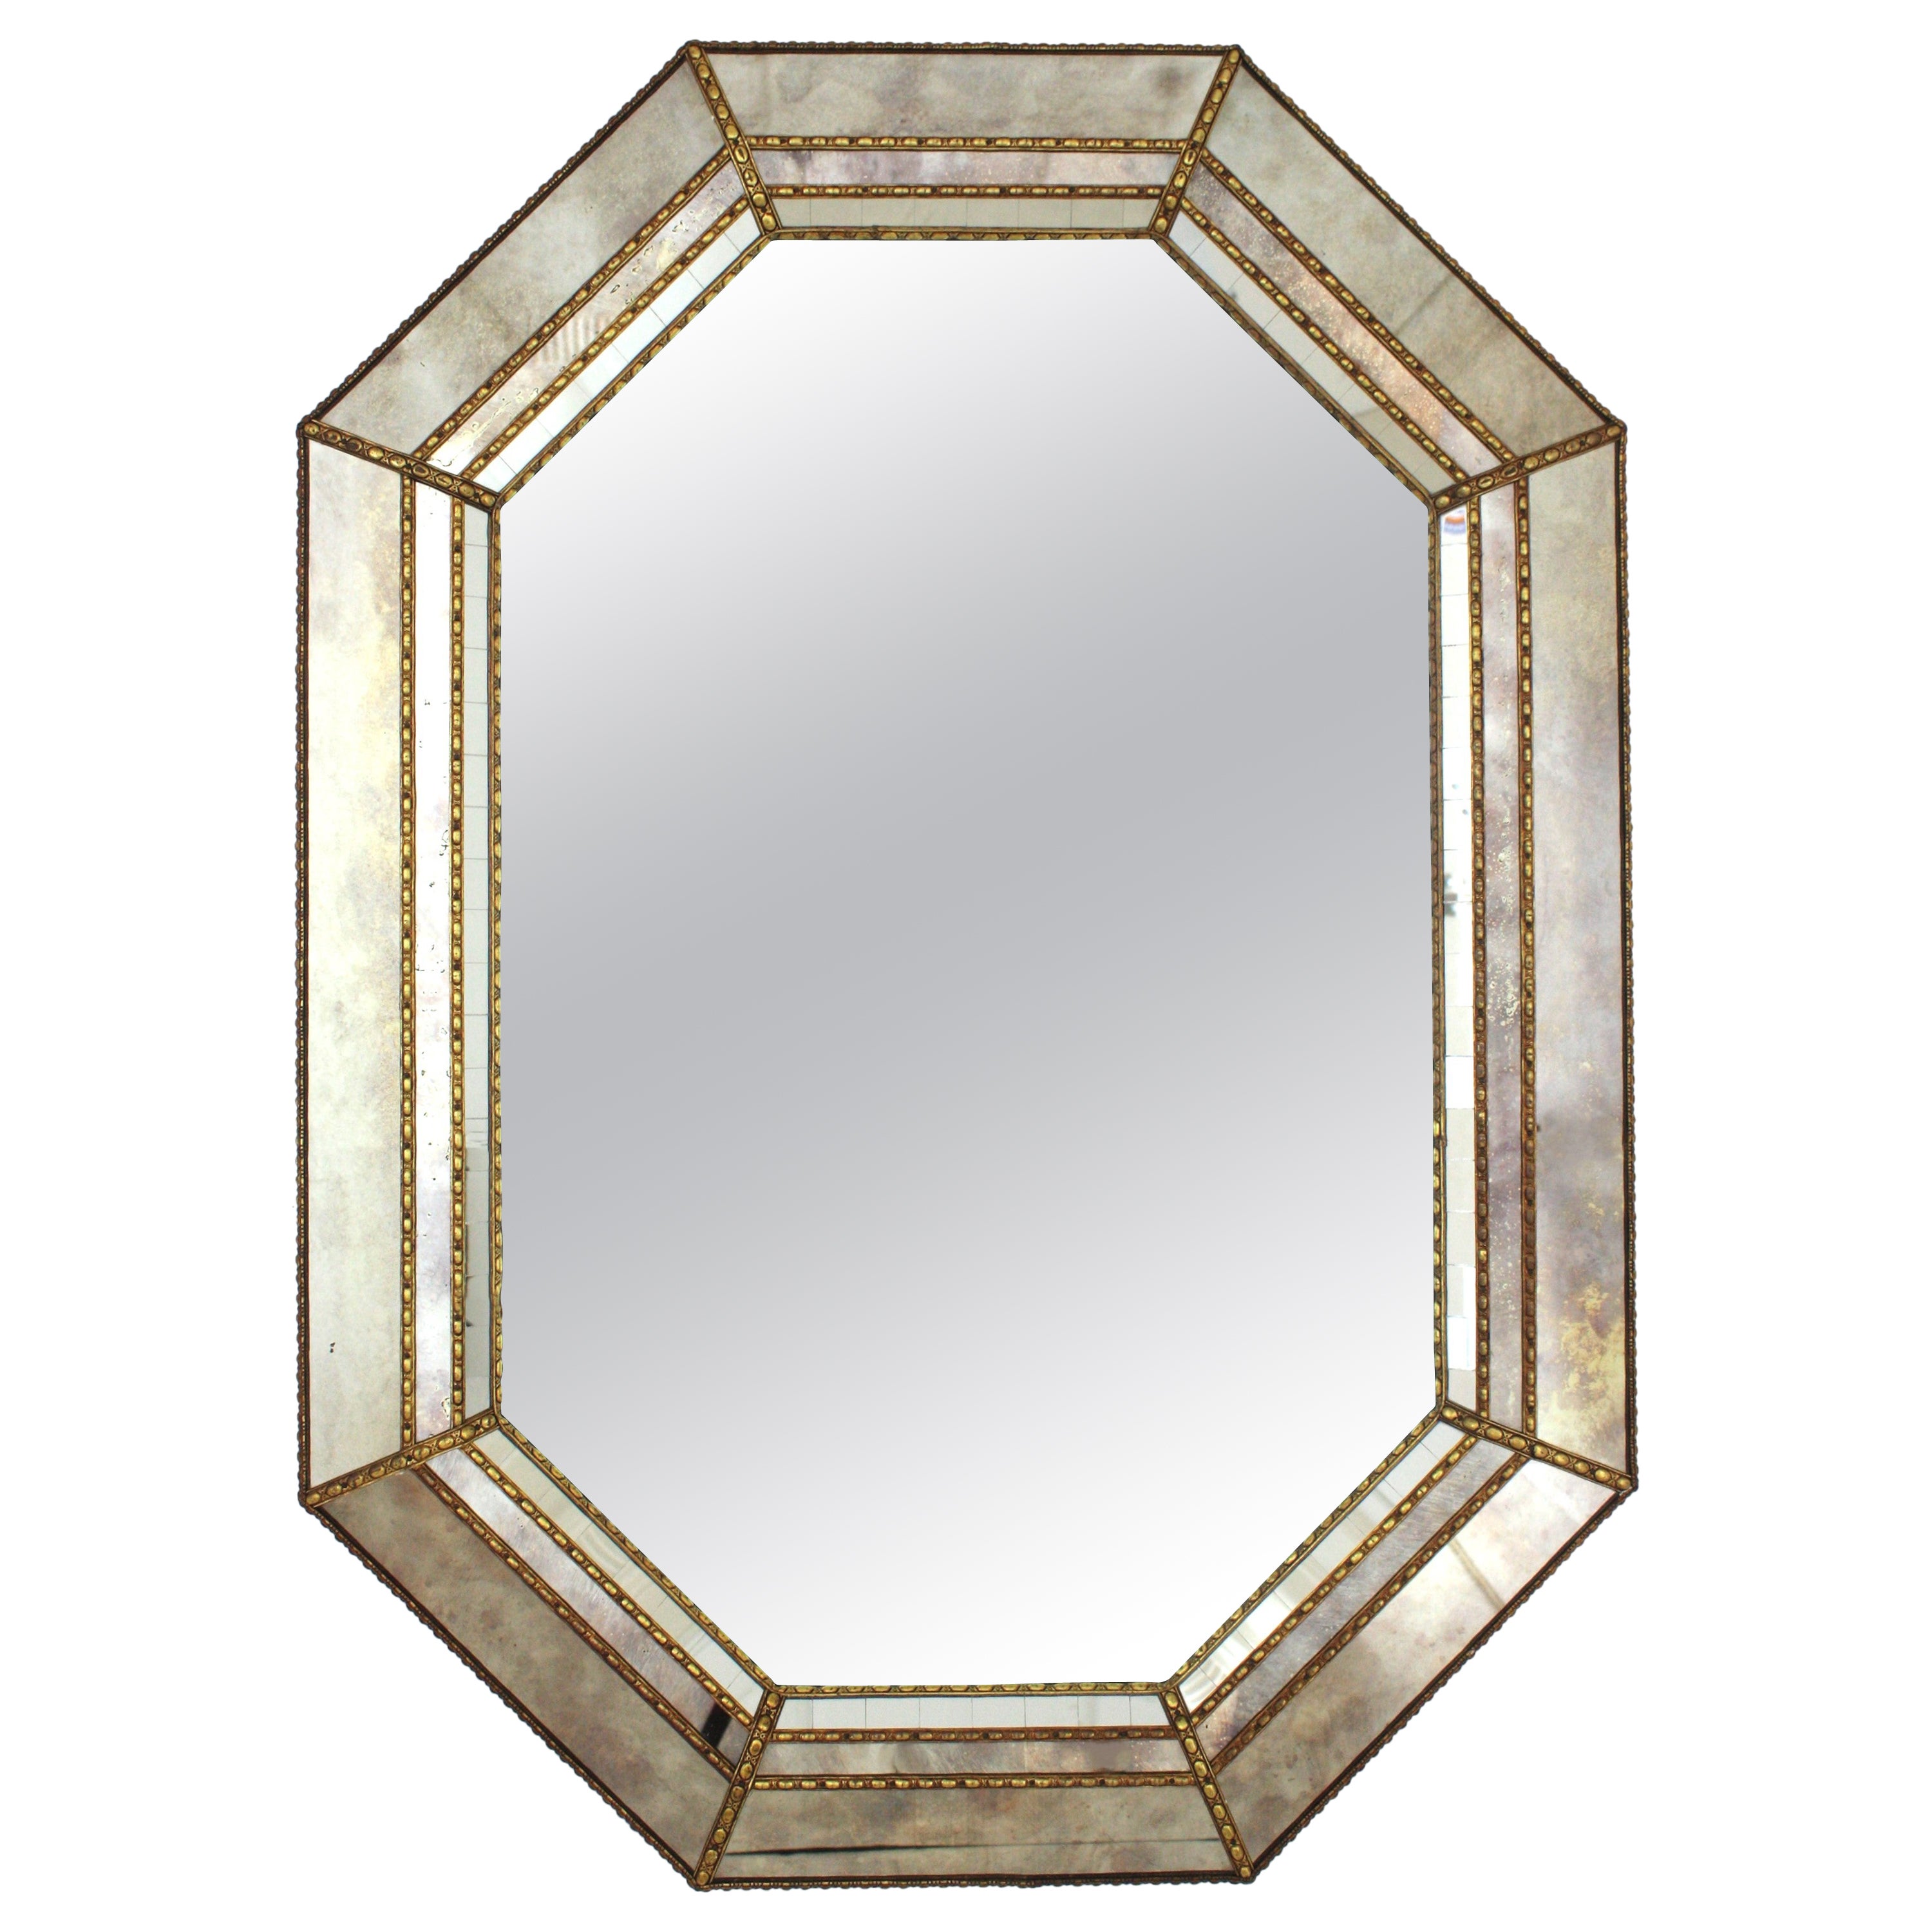 Achteckiger Spiegel im venezianischen Stil, Rahmen aus goldgrauem Glas und Details aus Messing